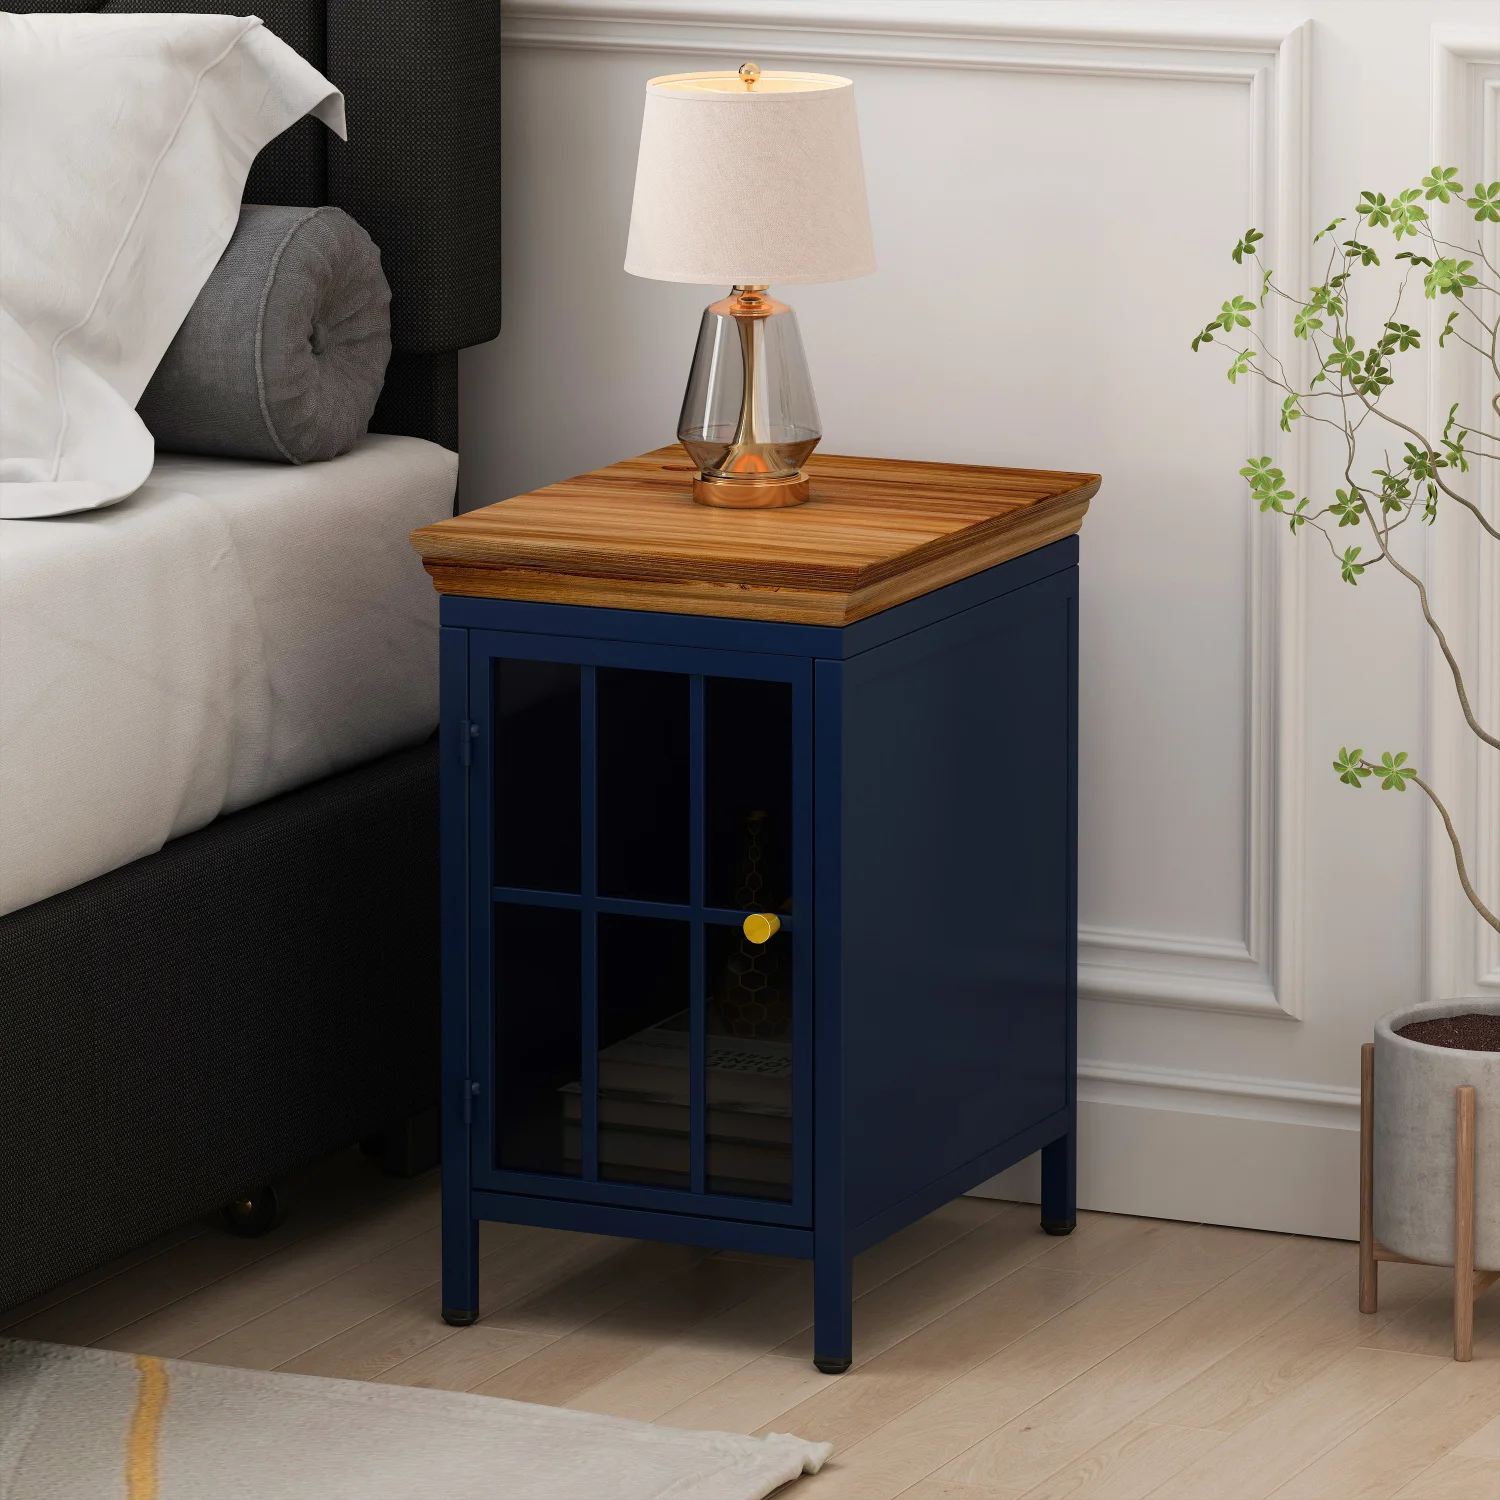 

Тумбочка из массива дерева темно-синяя с шкафом для хранения и столешницей для спальни и гостиной, стильный прикроватный столик или диван Sid